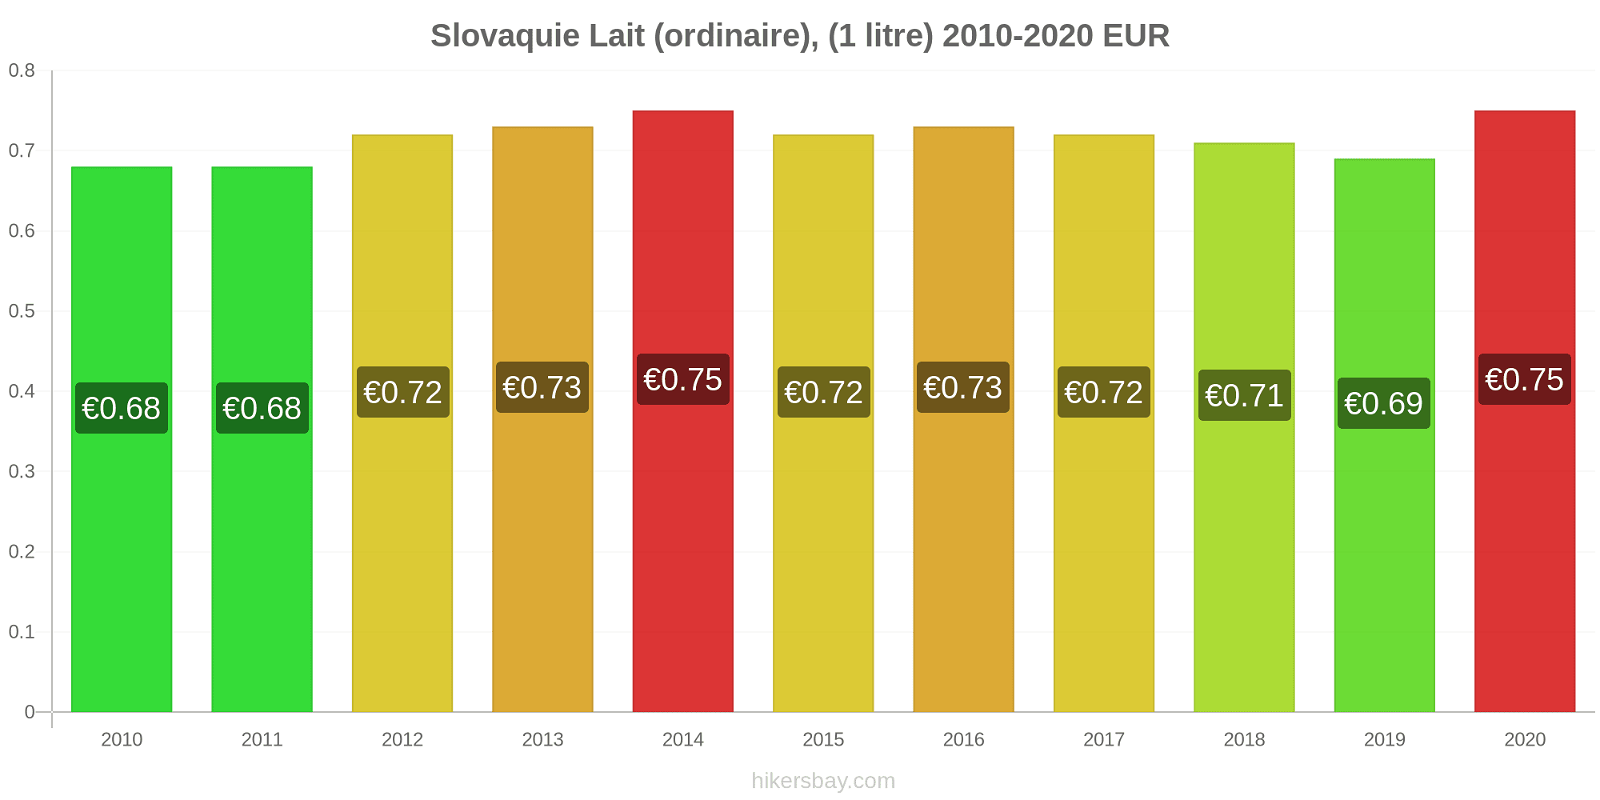 Slovaquie changements de prix (Régulier), lait (1 litre) hikersbay.com